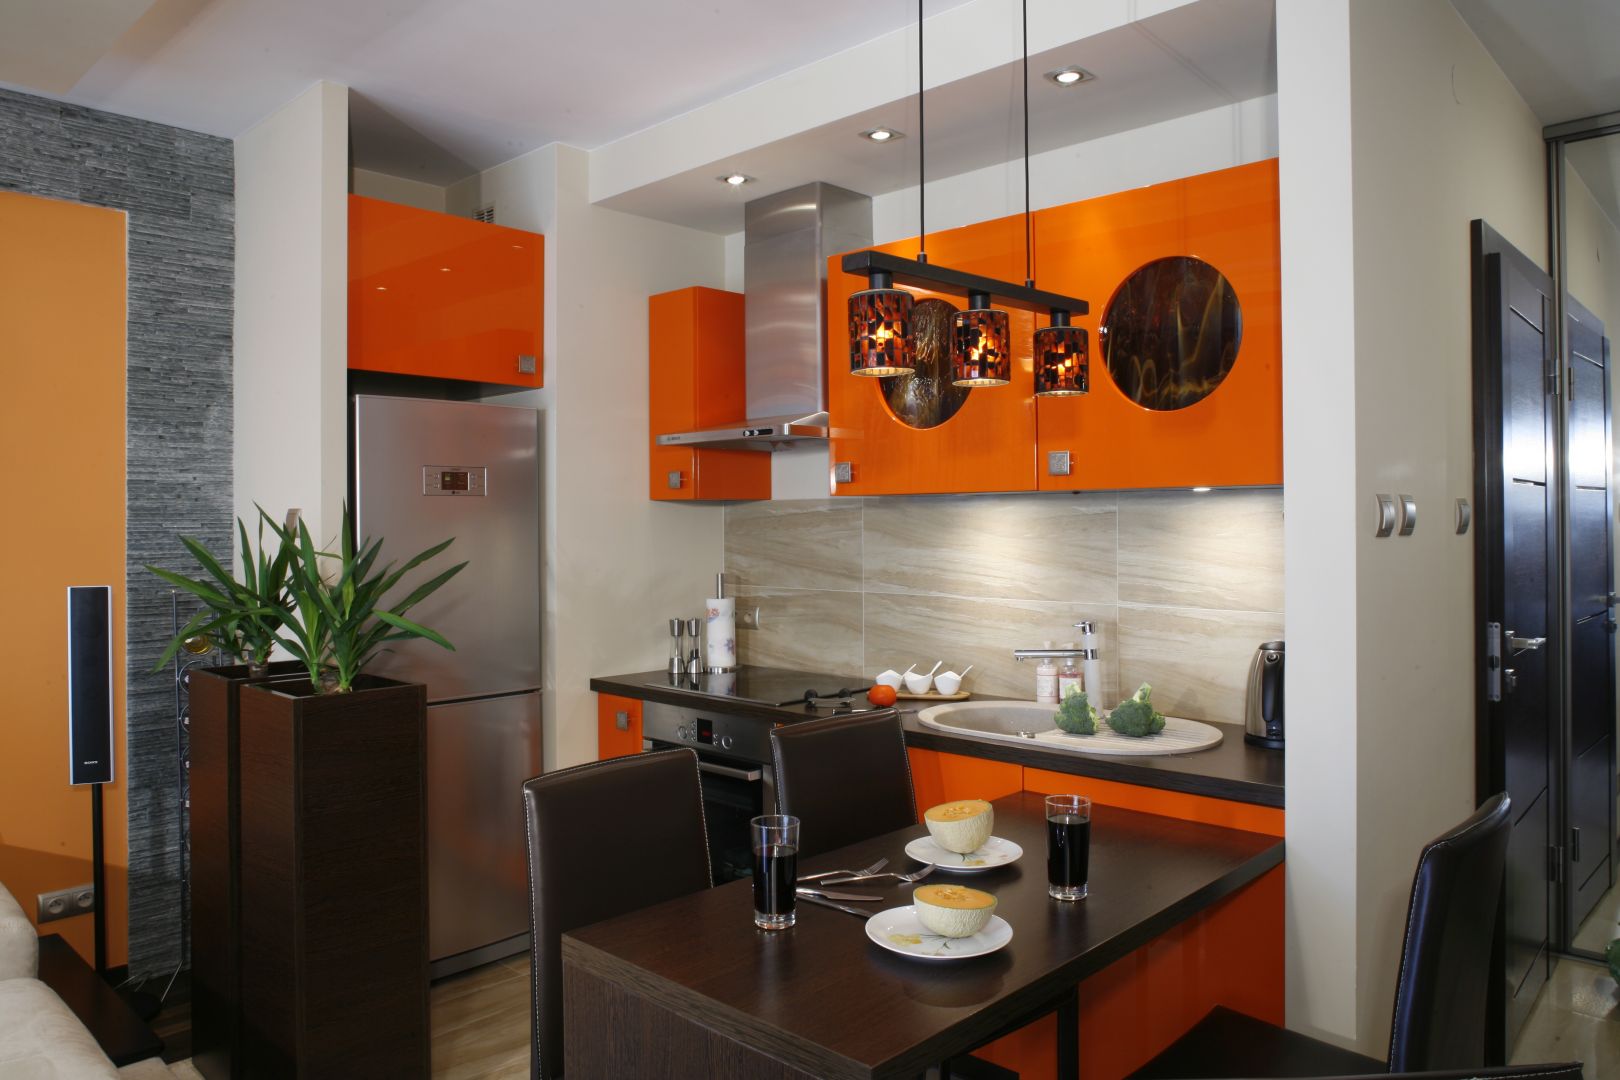 Niewielkich rozmiarów kuchnia urządzona została w soczystym kolorze pomarańczy, który doskonale podkreśla wakacyjny charakter wnętrza. Projekt Jolanta Kwilman. Fot. Bartosz Jarosz.